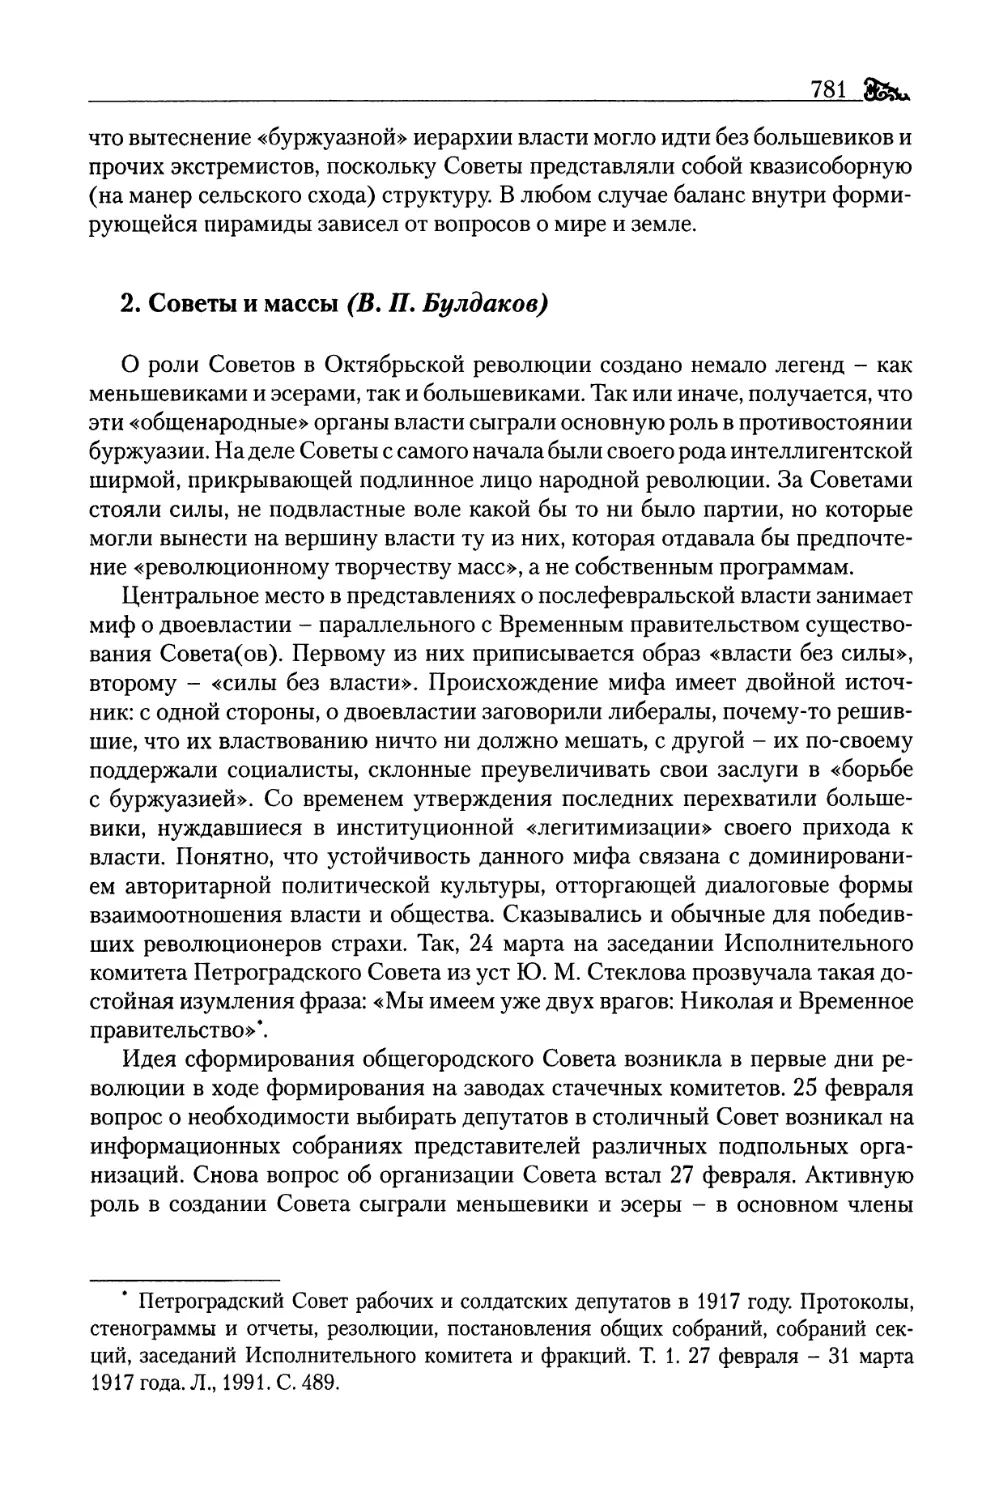 2. Советы и массы (В. П. Булдаков)